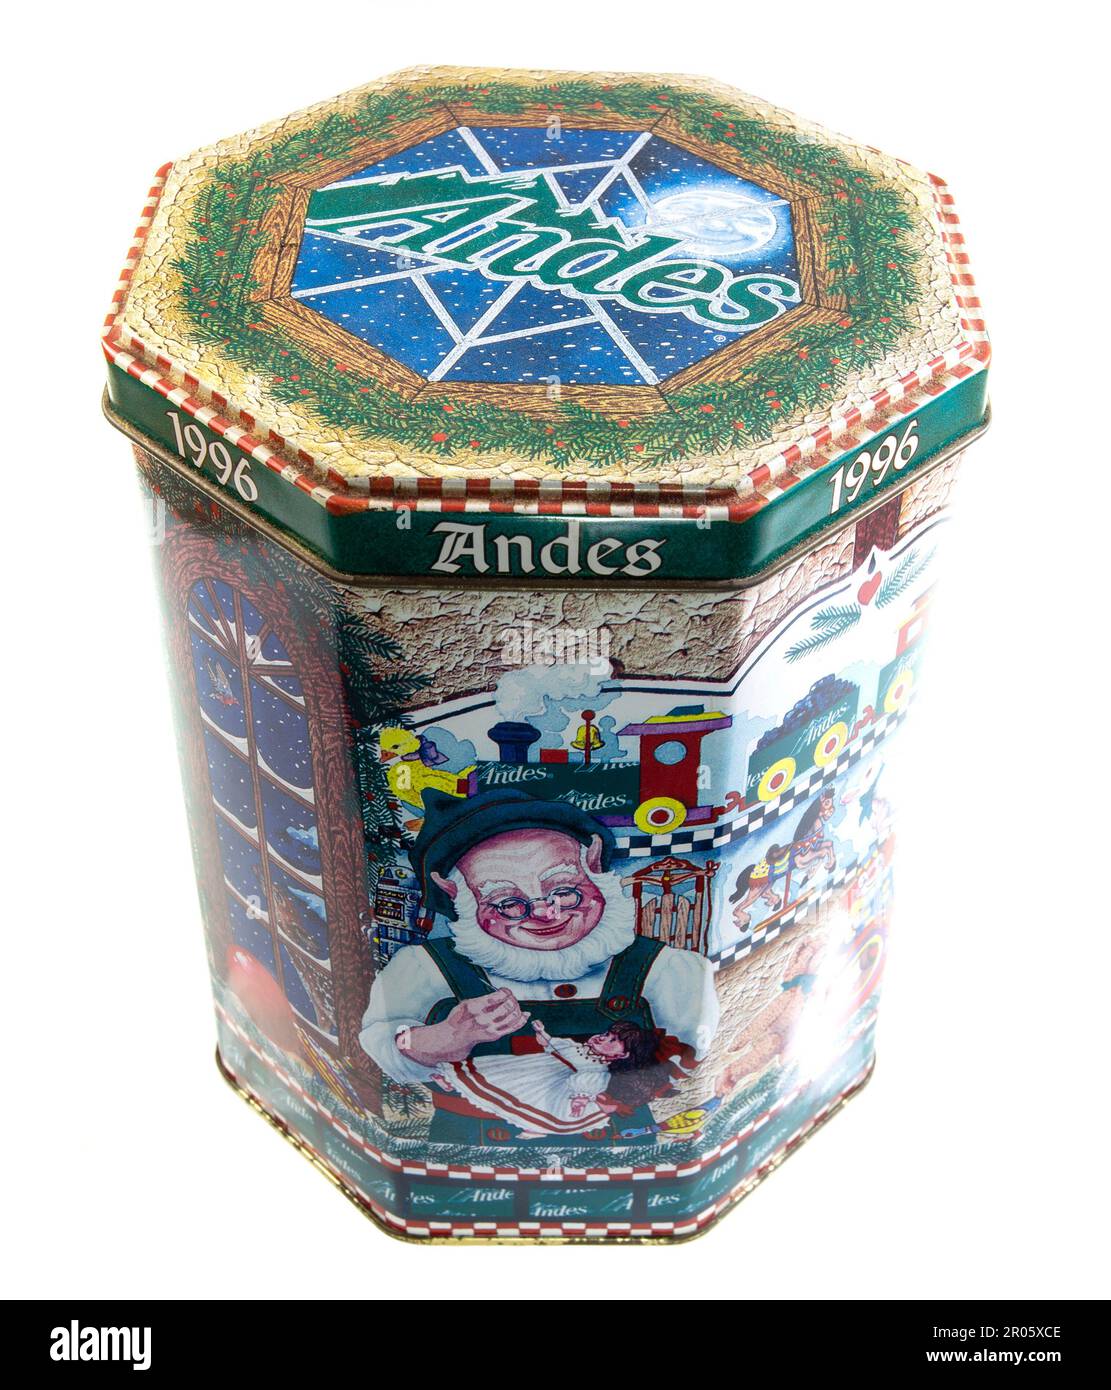 1996 scatola di biscotto d'epoca con tini classici di creme de menthe per le Ande Candies Foto Stock